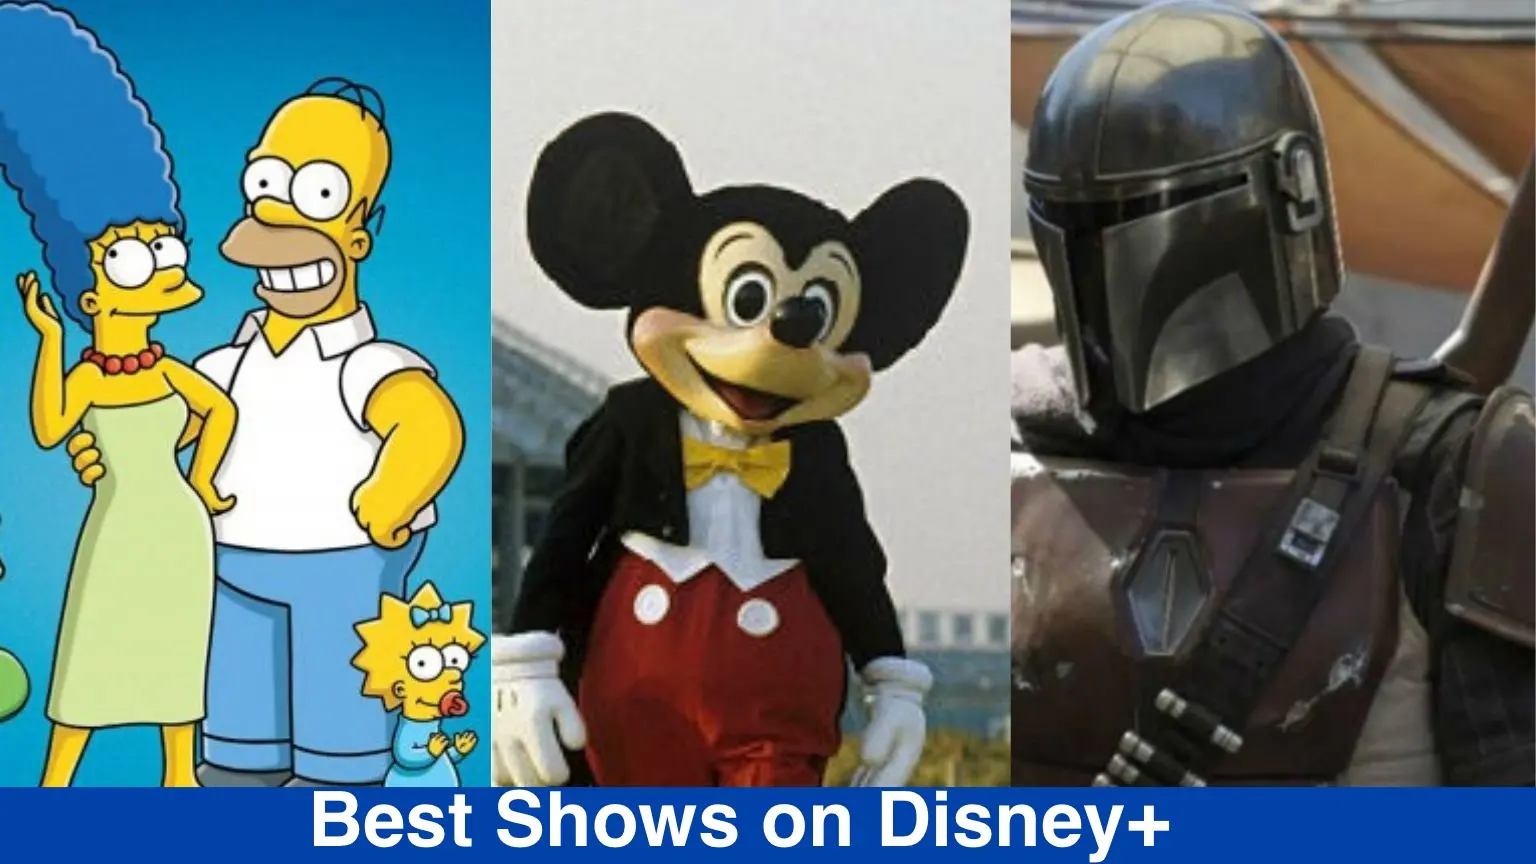 Best Disney shows